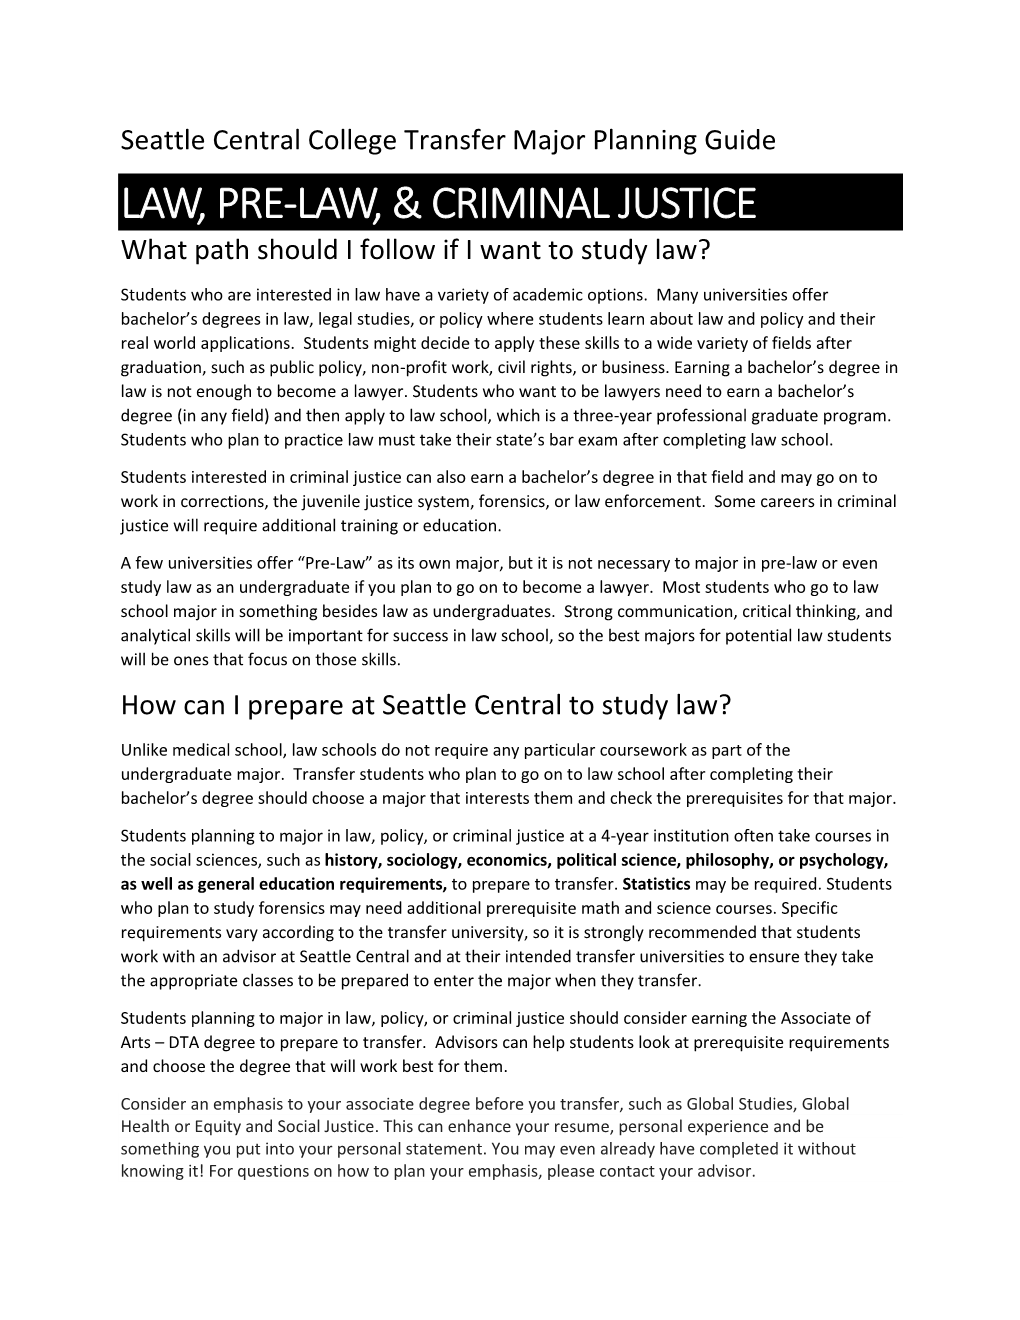 Law, Pre-Law, & Criminal Justice